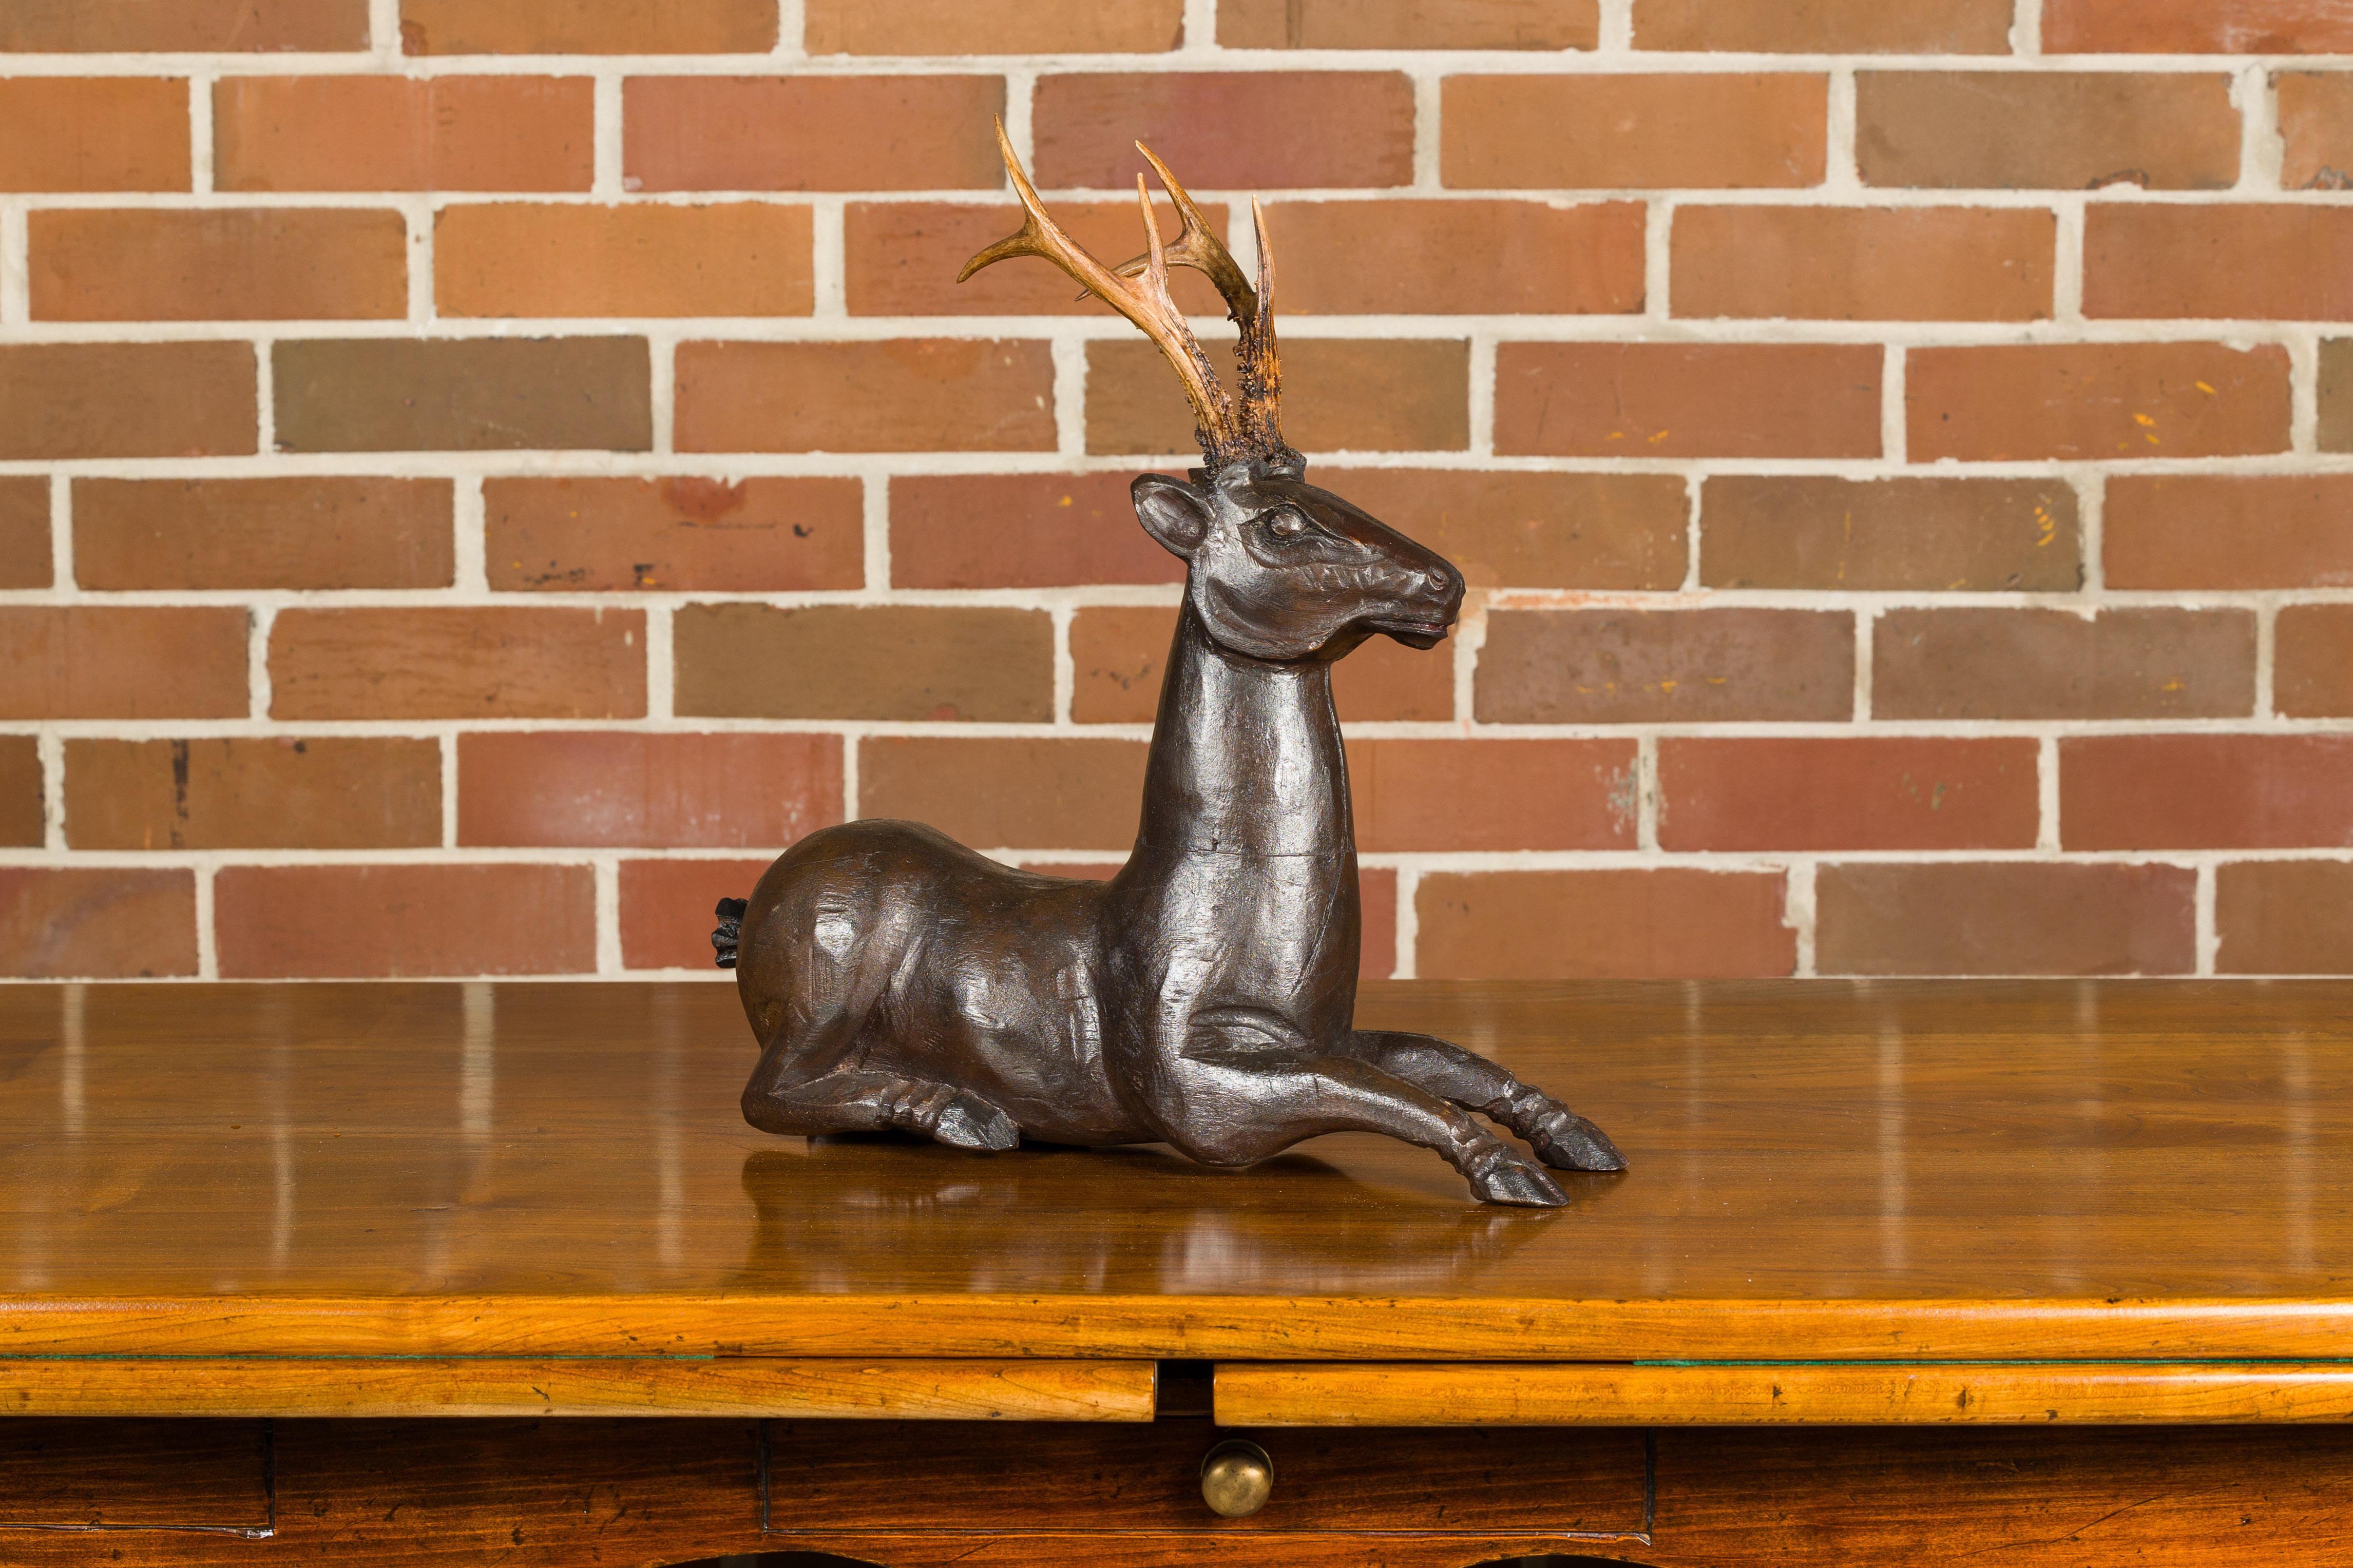 wooden deer statue